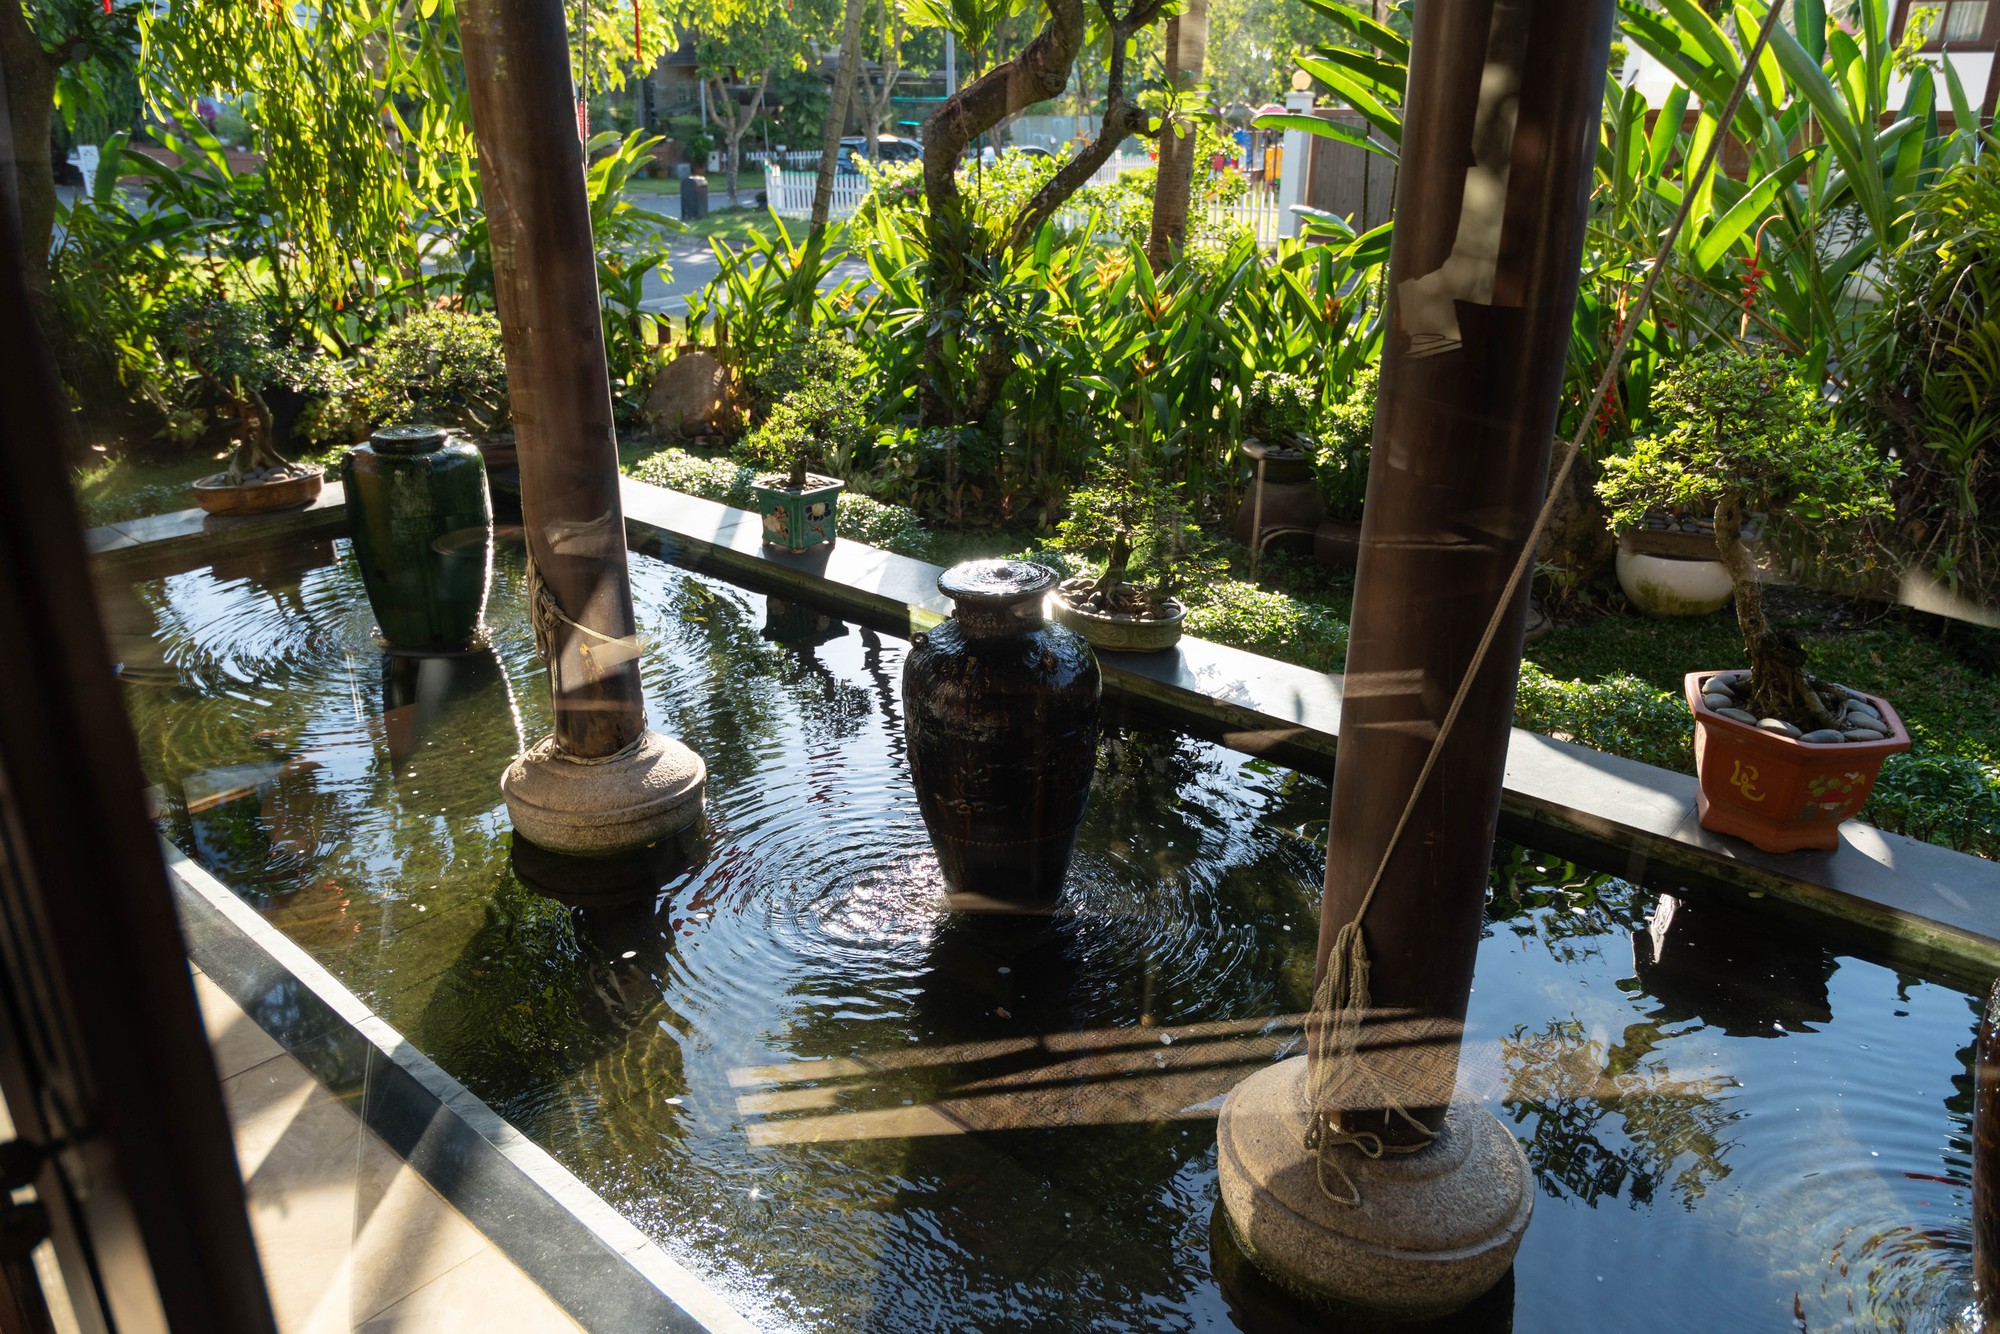 Biệt thự nhà vườn gần 20 năm tuổi của HH Hà Kiều Anh: Phong vị Á Đông cổ kính, khẳng định không bao giờ bán - Ảnh 19.